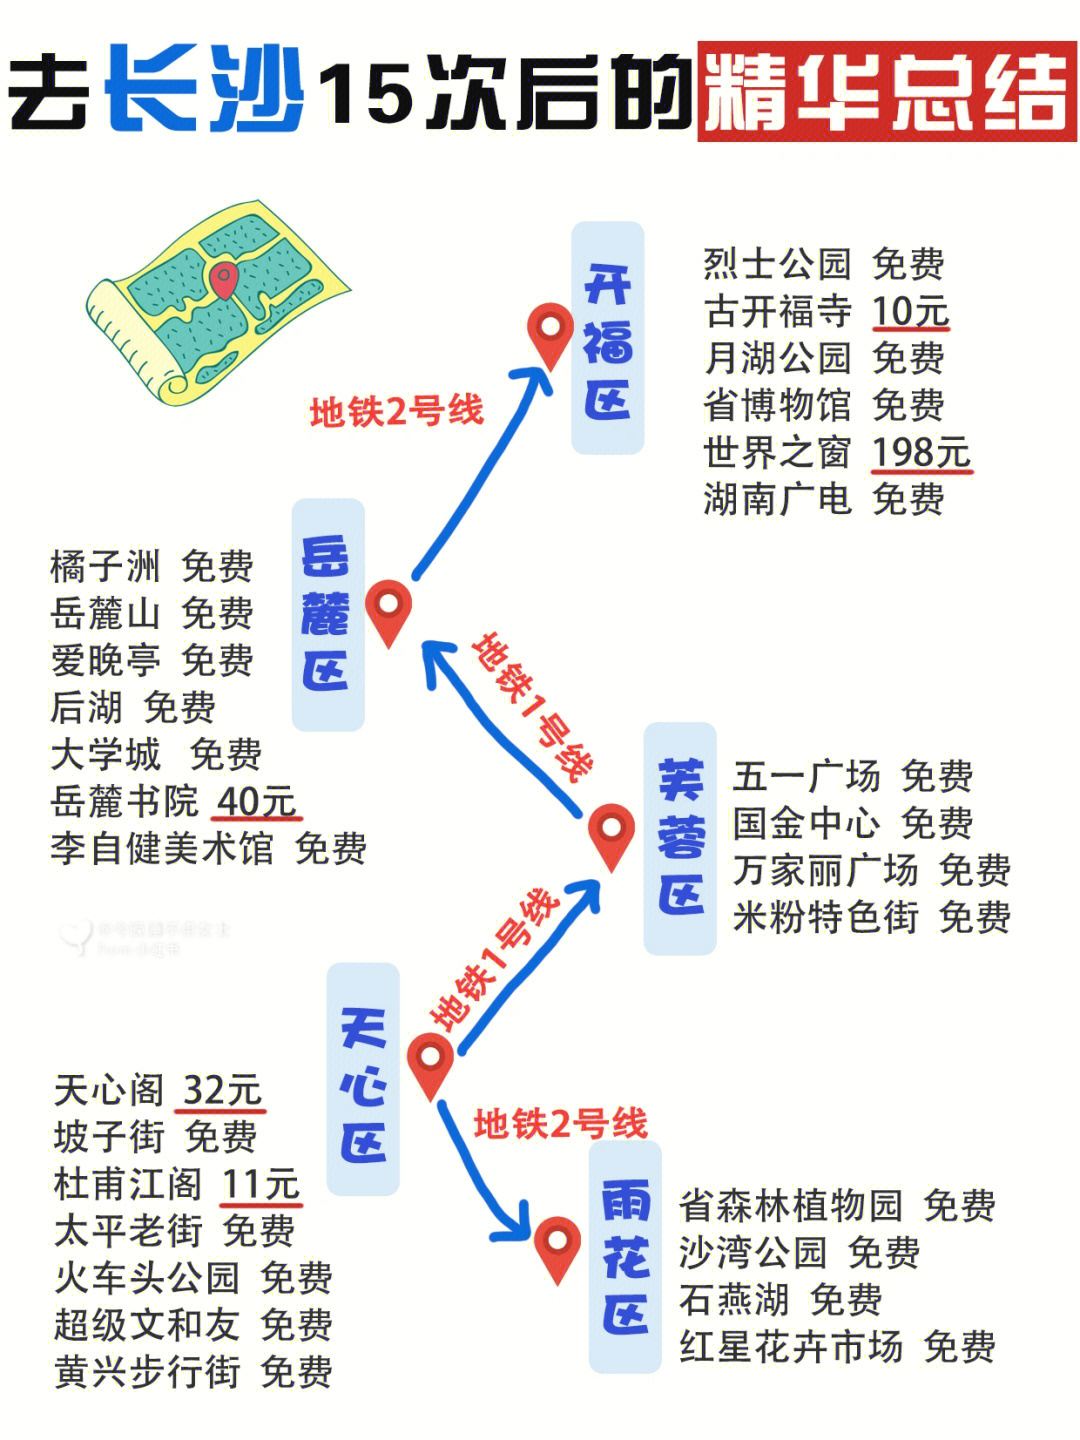 7615【飞机】长沙只有一个黄花机场,到达机场可乘坐磁悬浮列车到